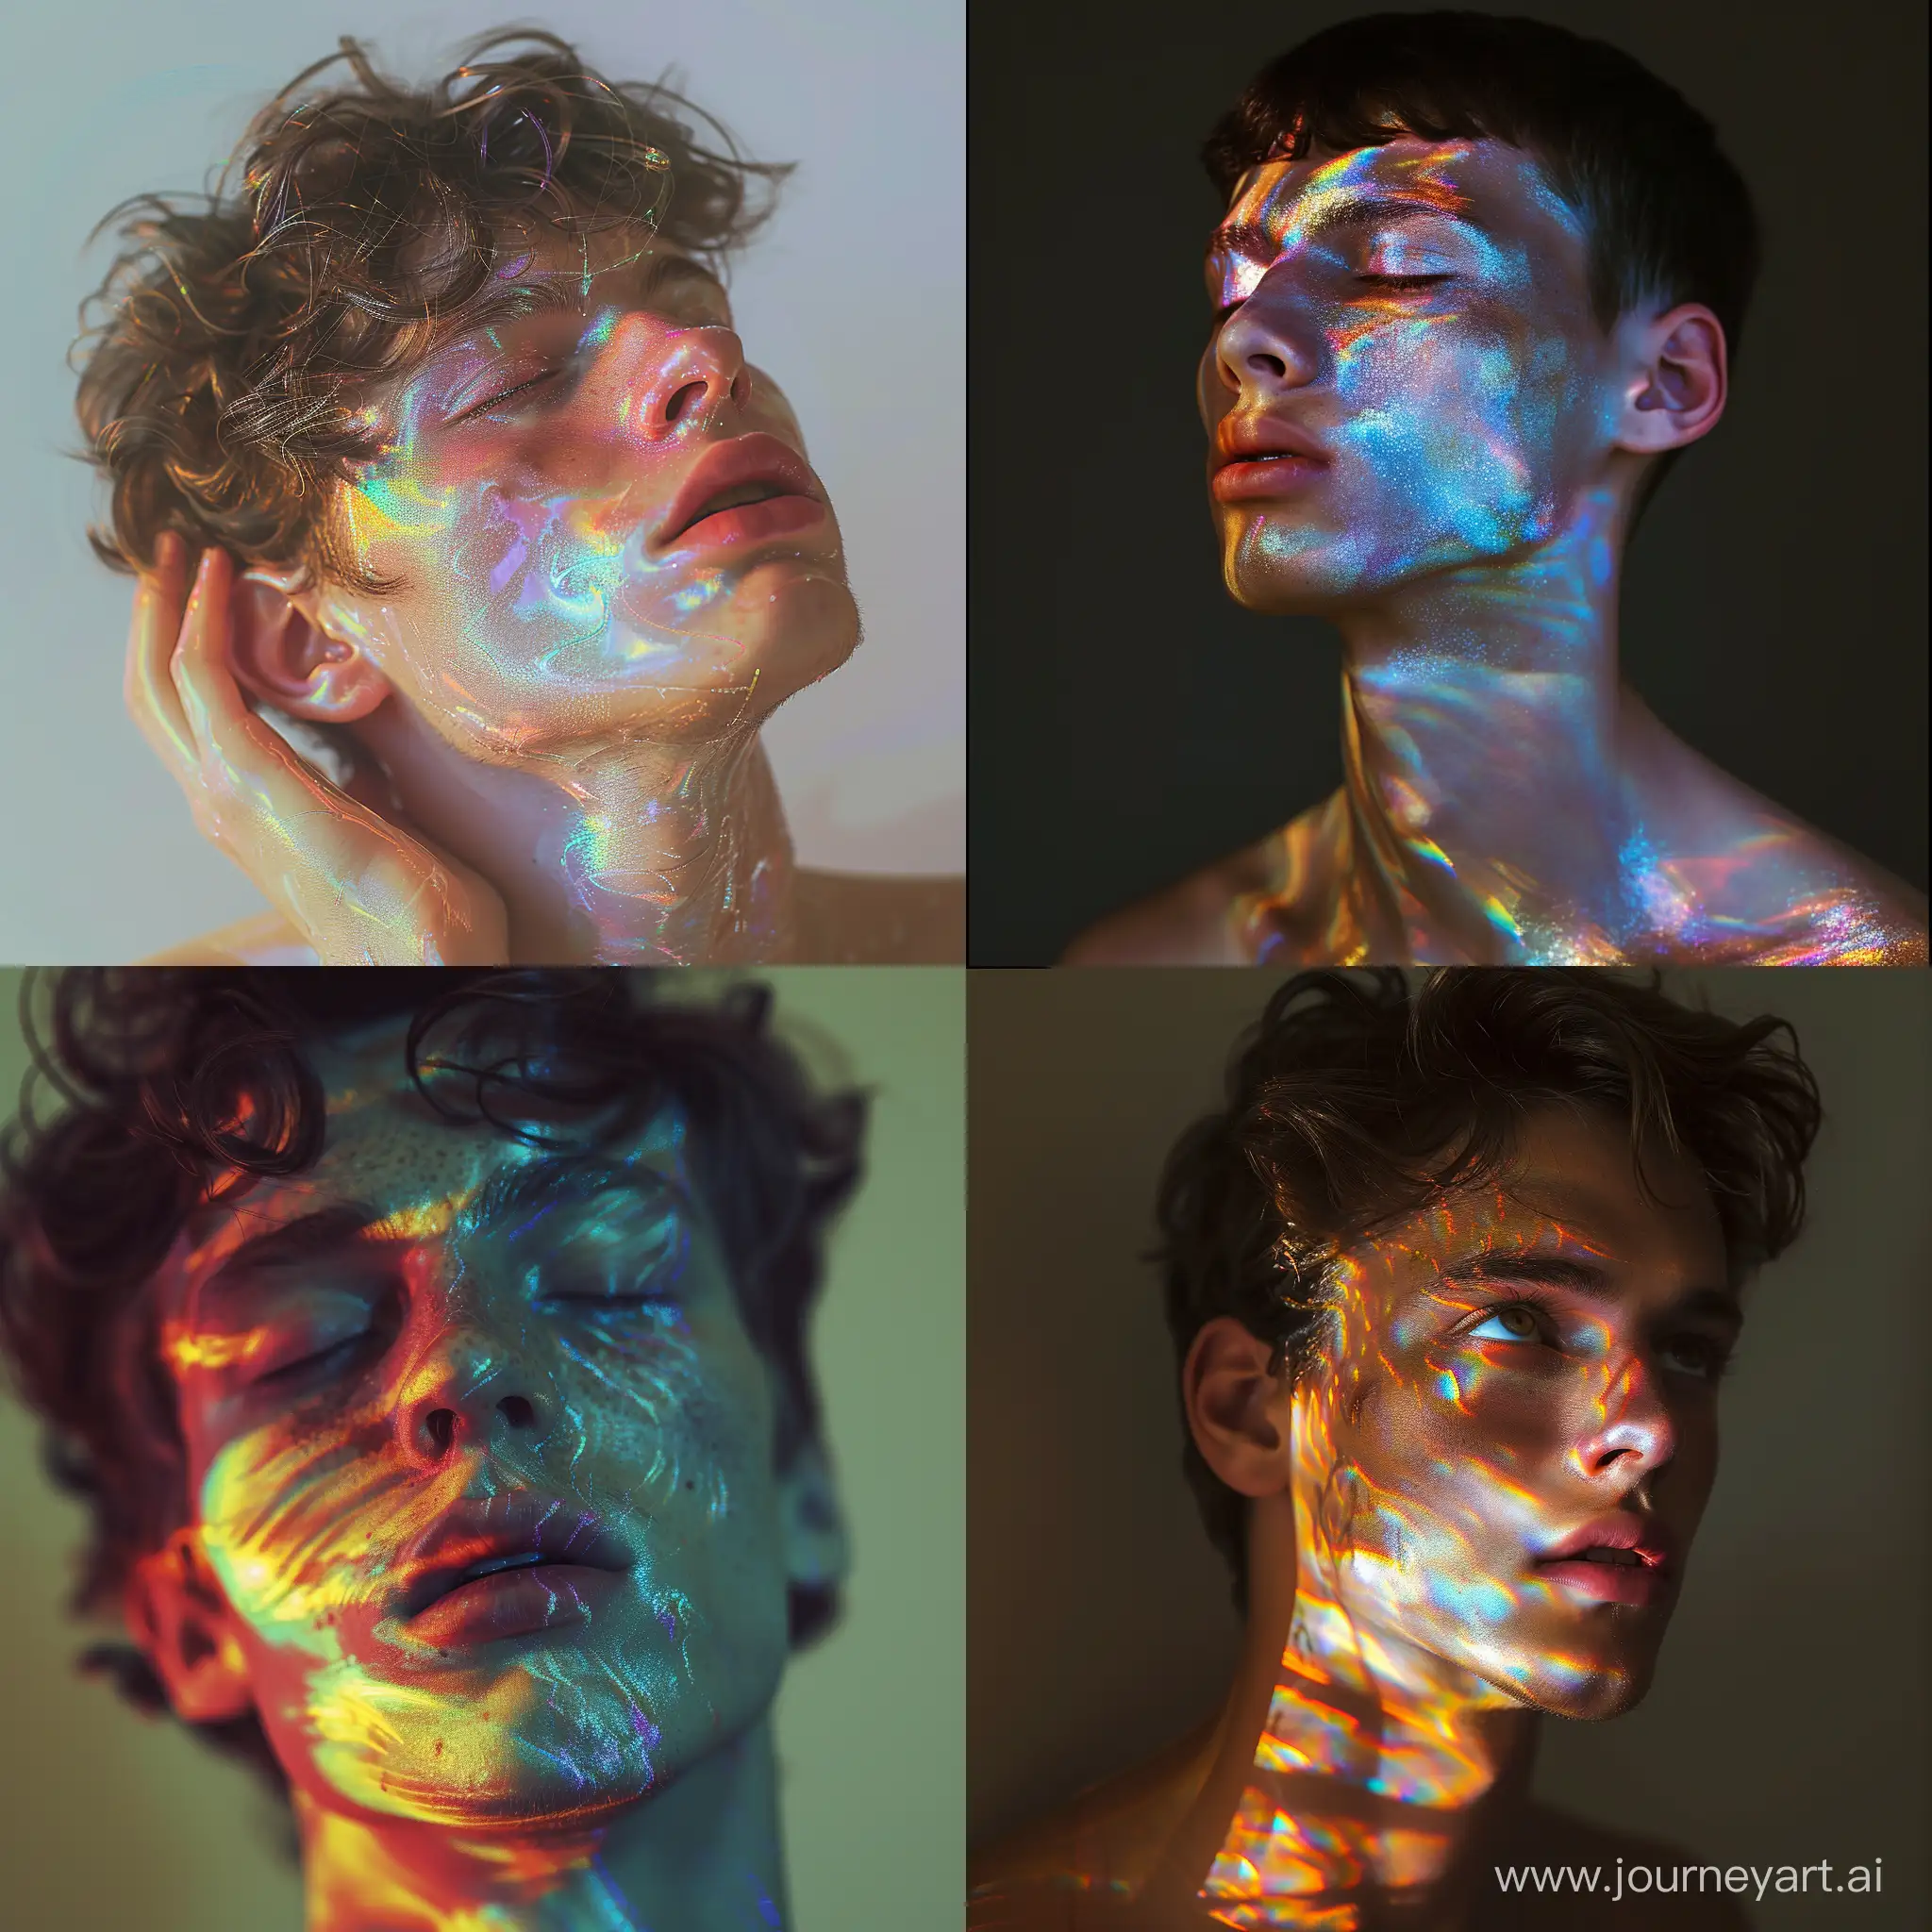 realistic image iridescent stye of a 20 y.o guy — v 4; hiperrealistic, baroque stylege, photo with high exposure